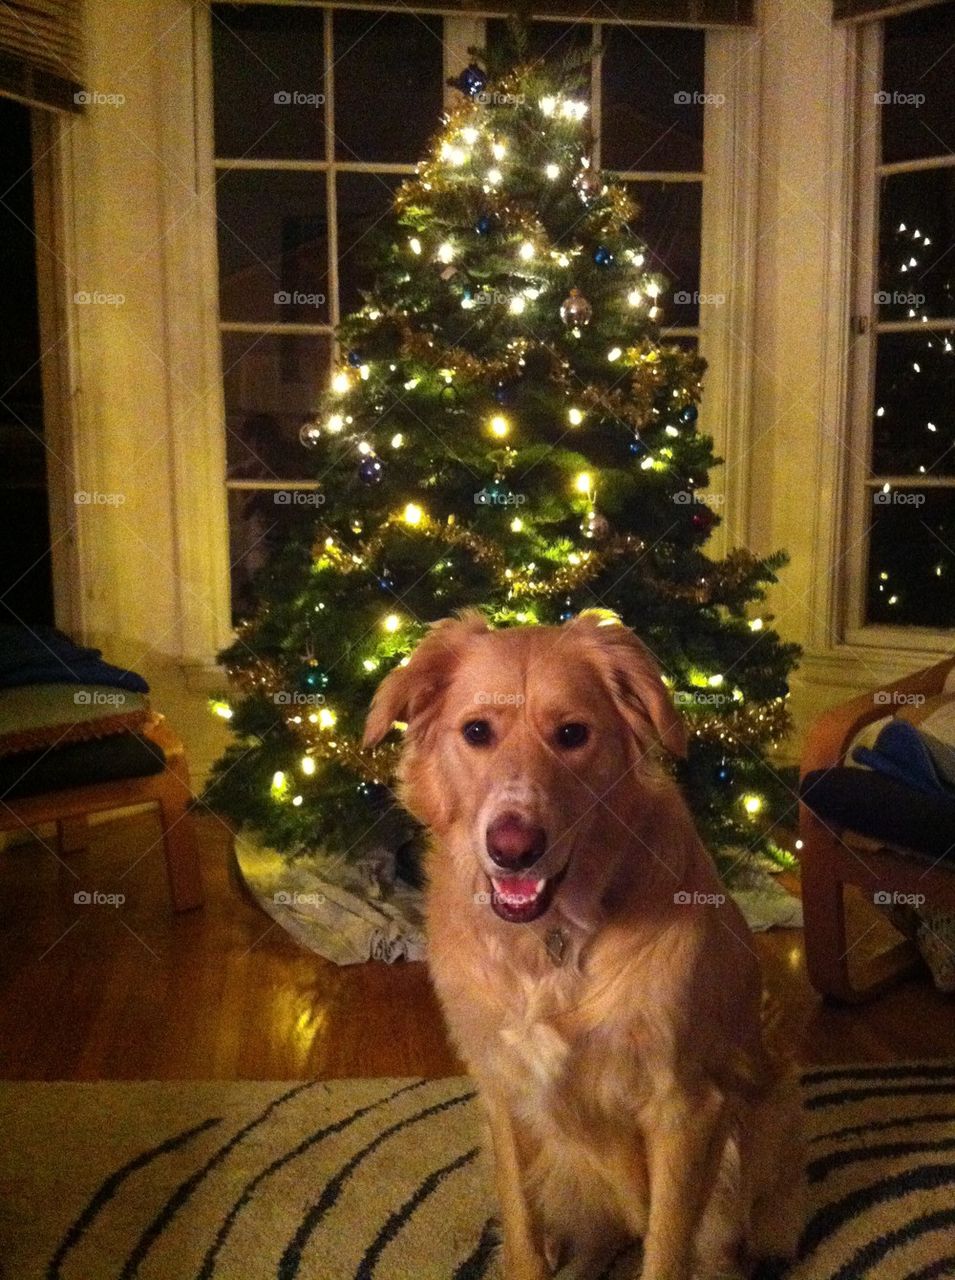 Dog and Christmas tree